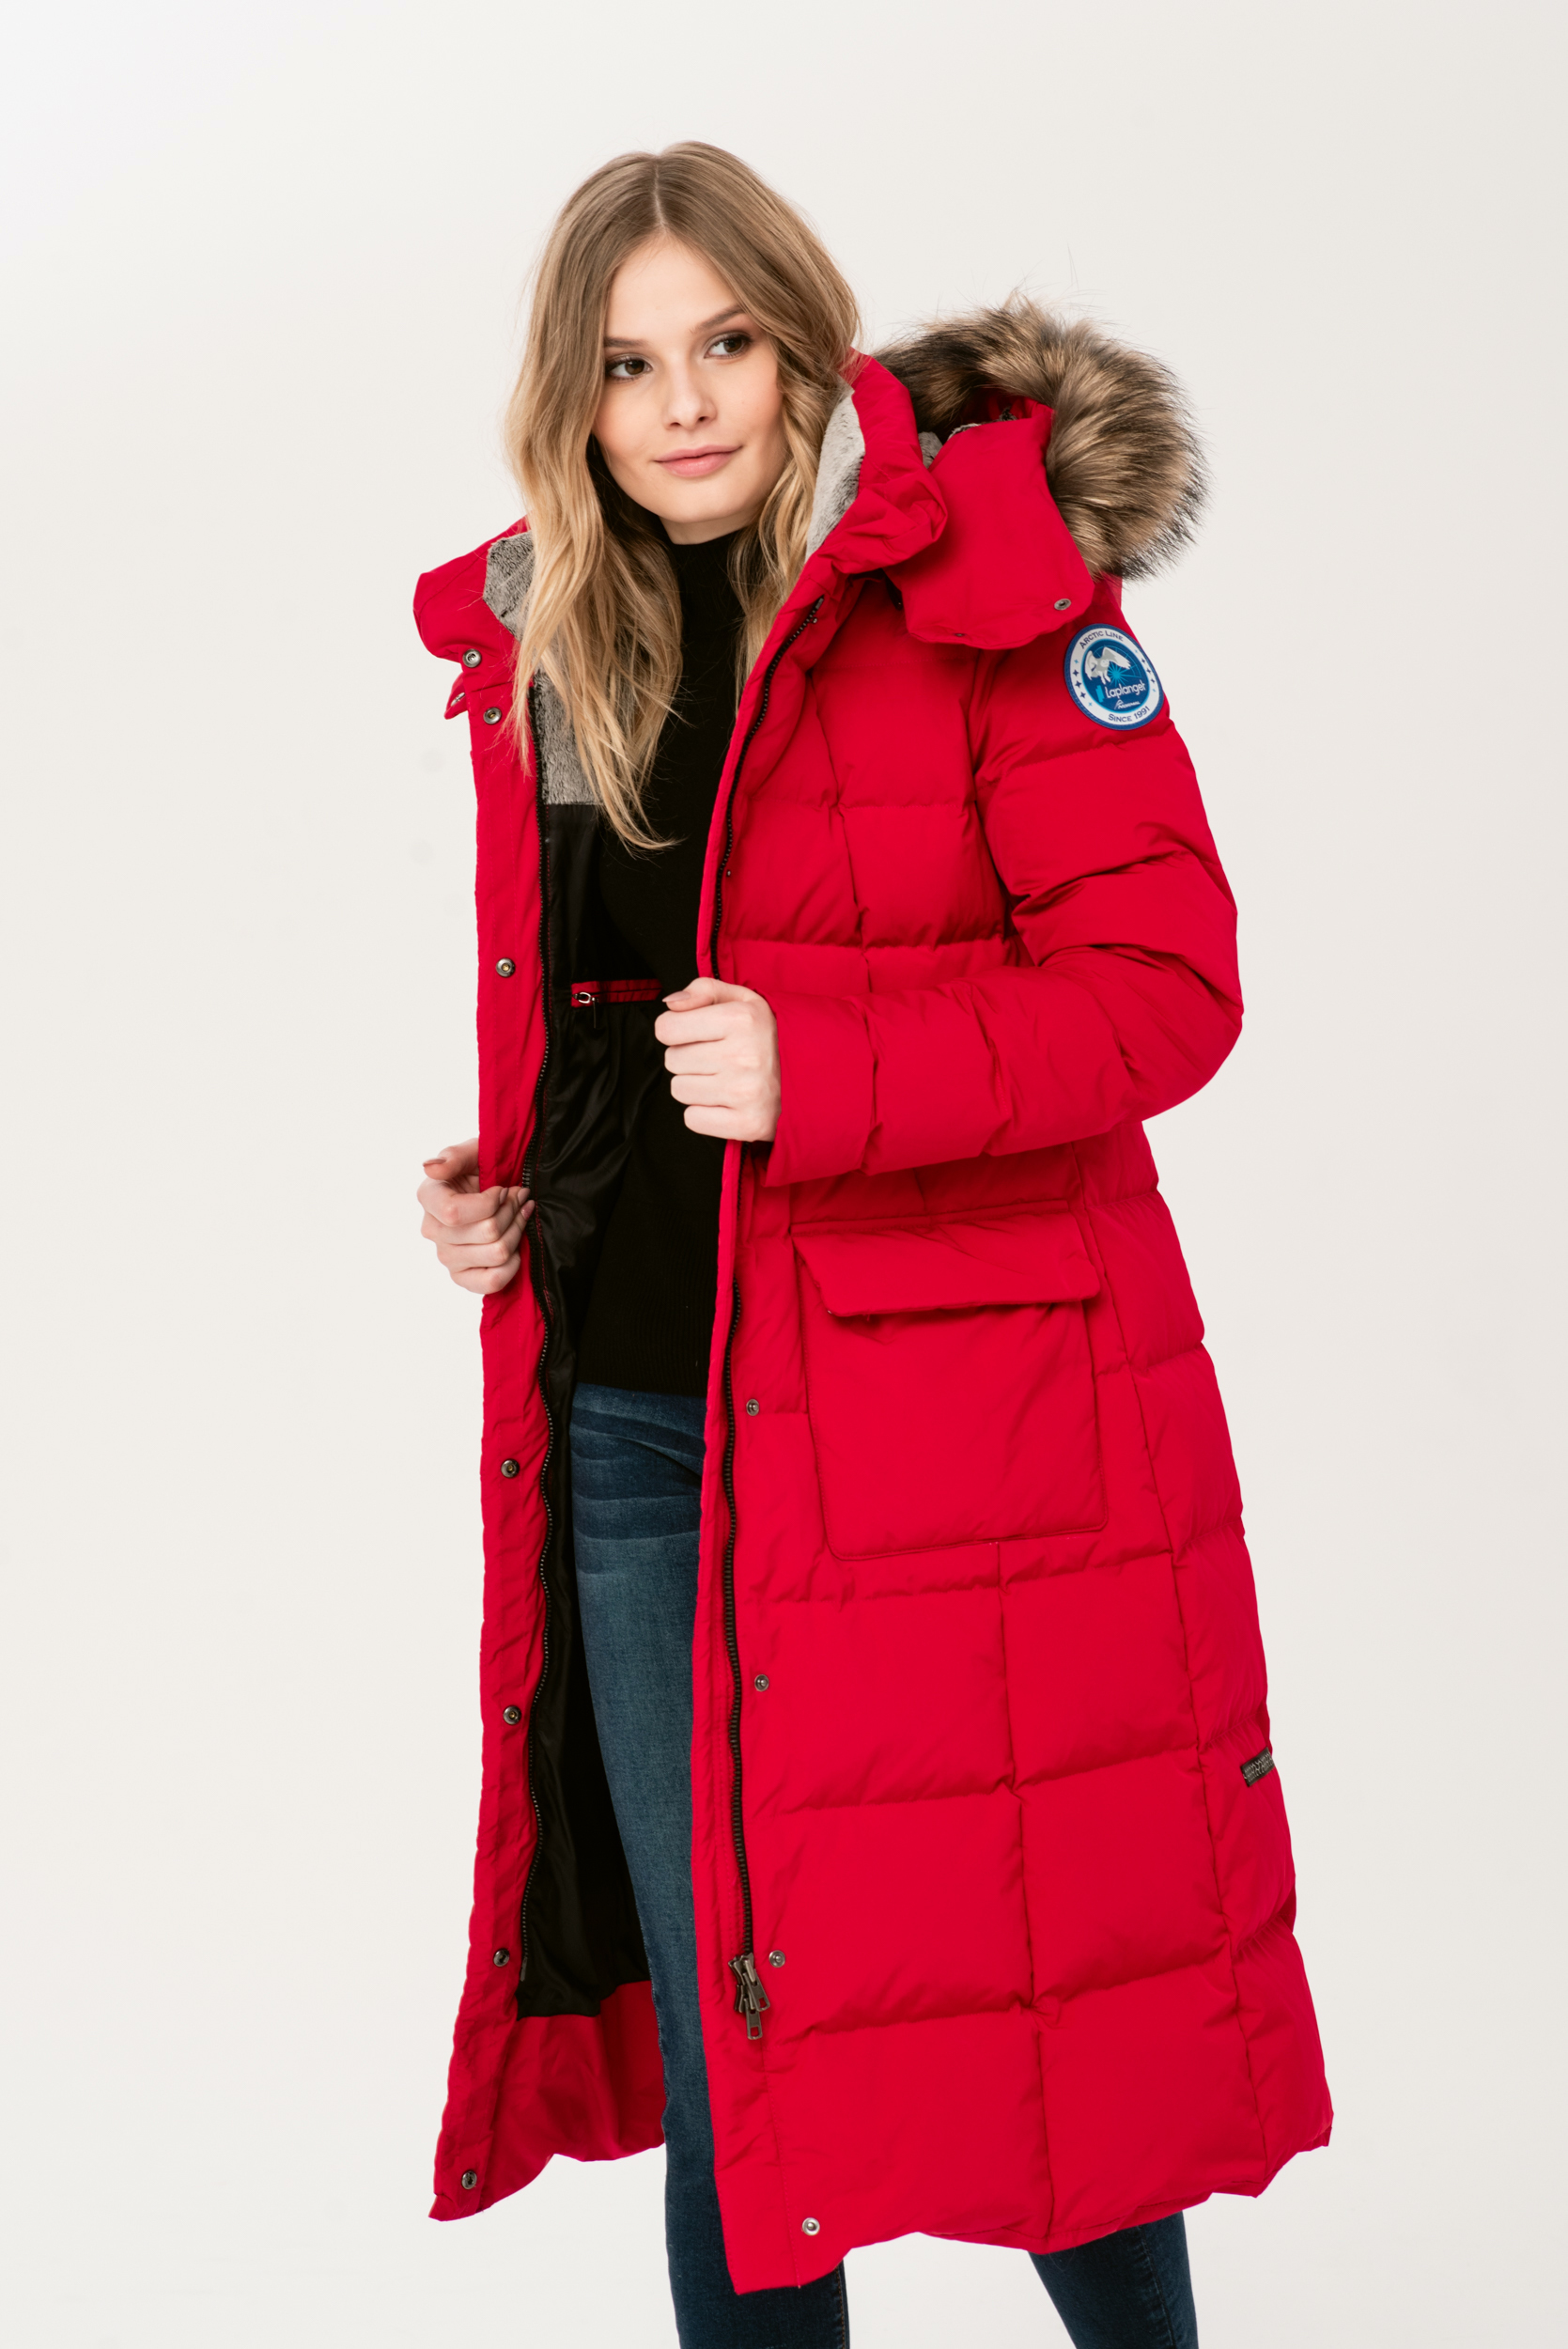 Пуховое пальто Laplanger красное. Пальто Суоми Лаплангер. Магазин Аляска Псков.